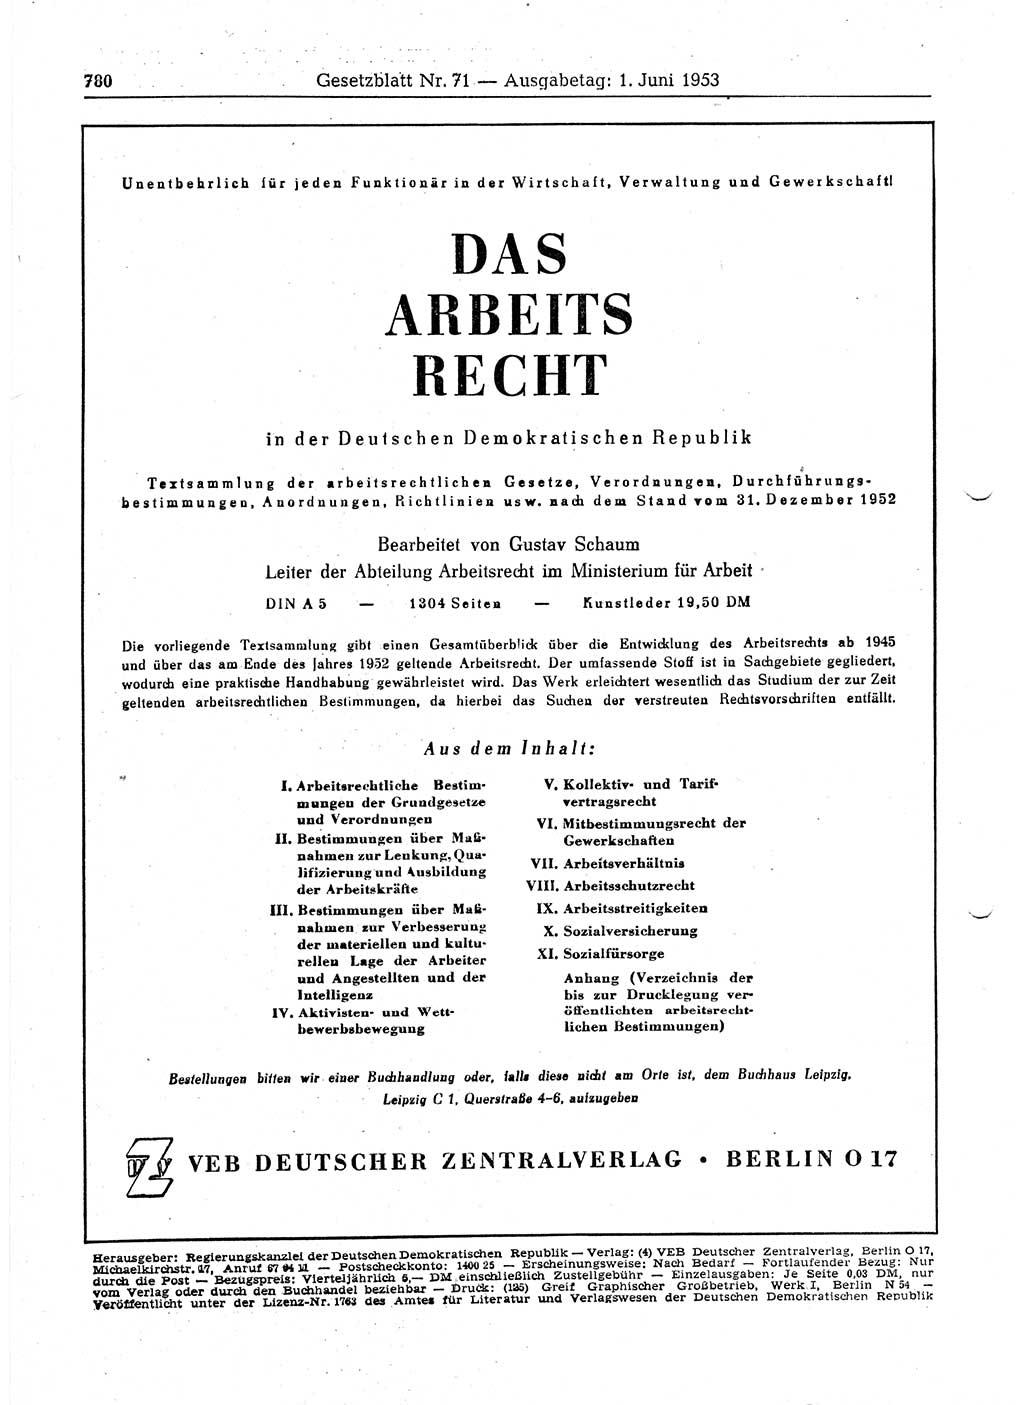 Gesetzblatt (GBl.) der Deutschen Demokratischen Republik (DDR) 1953, Seite 780 (GBl. DDR 1953, S. 780)